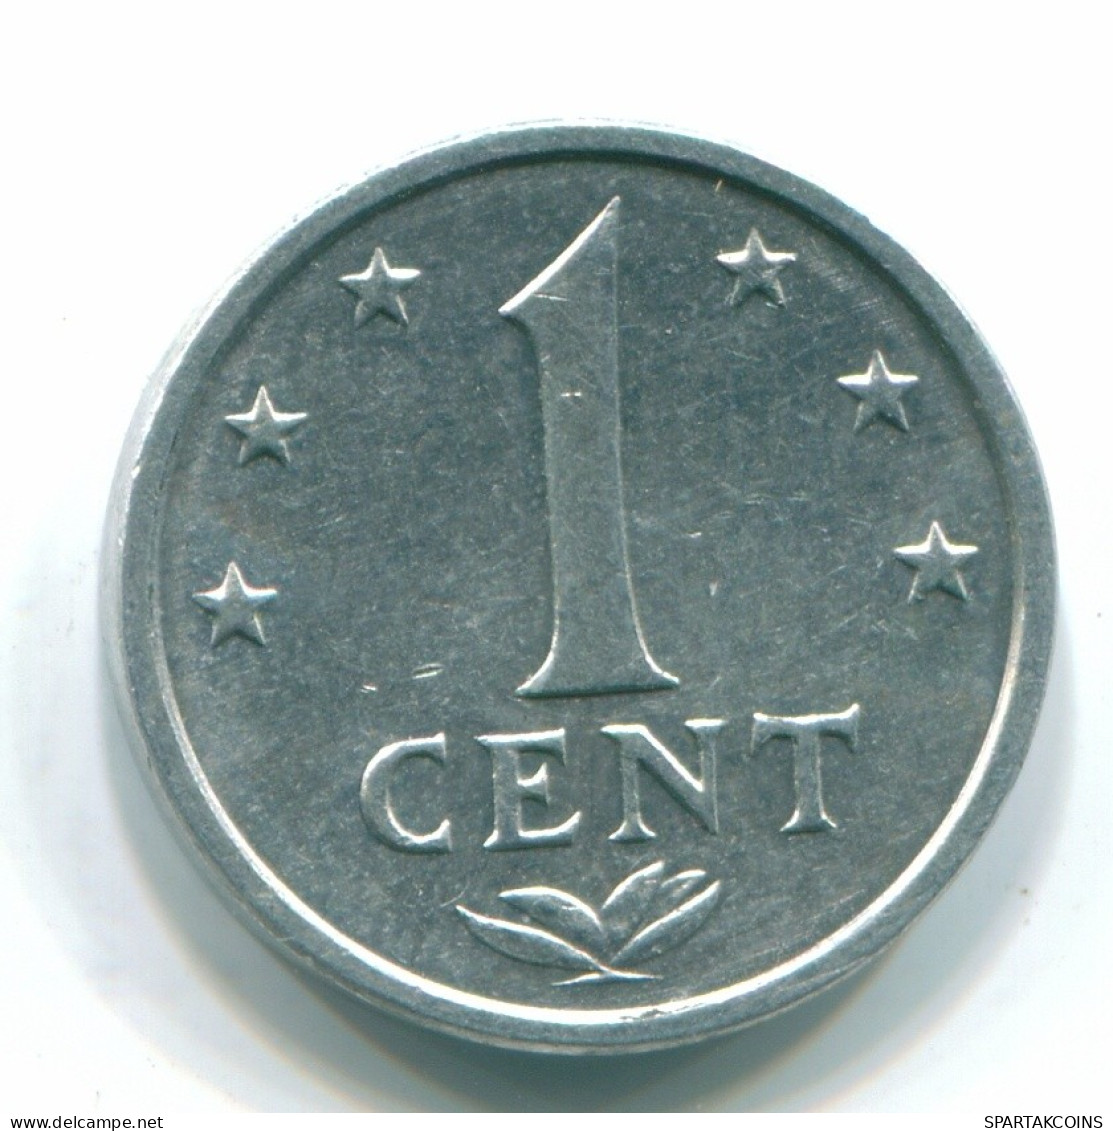 1 CENT 1981 NETHERLANDS ANTILLES Aluminium Colonial Coin #S11200.U.A - Niederländische Antillen